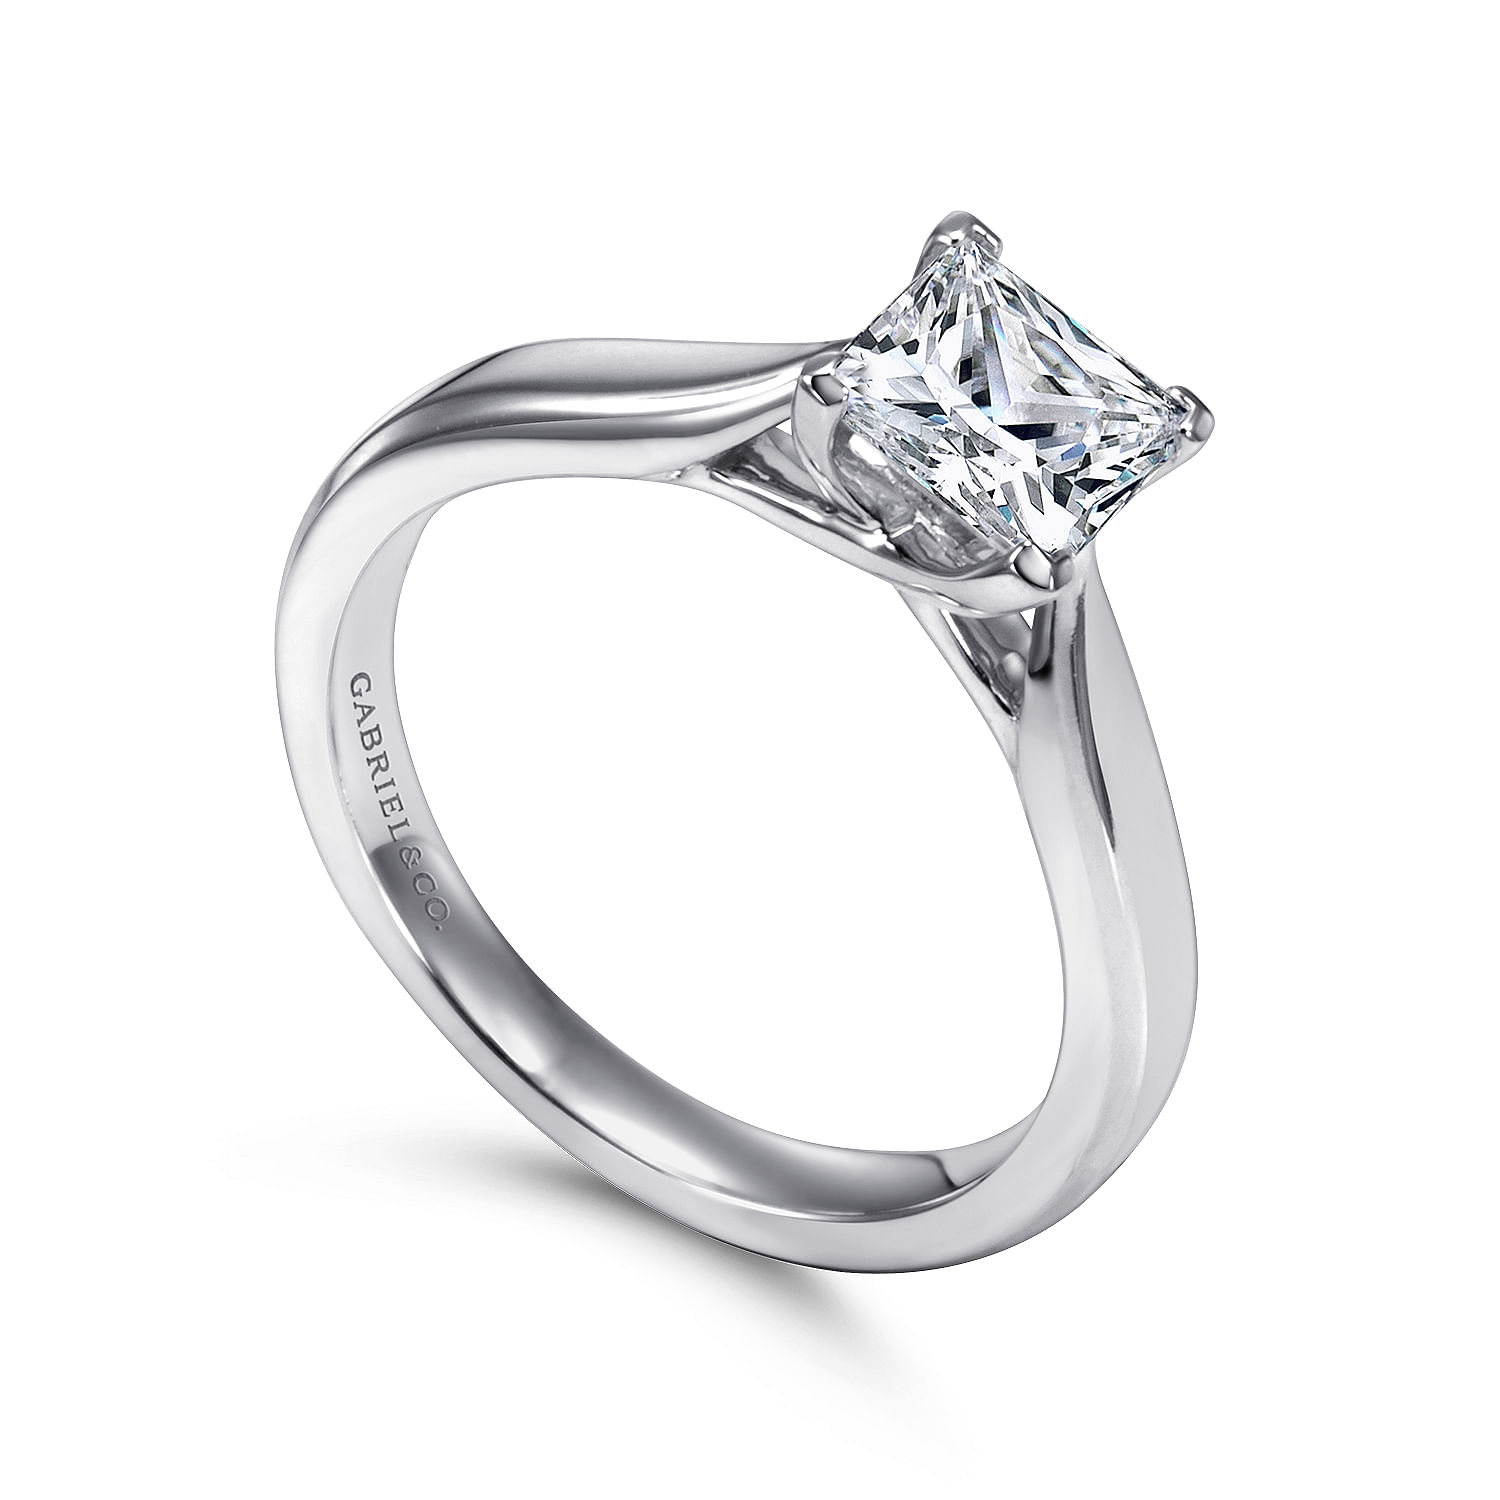 Jamie - 14K White Gold Princess Cut Diamond Engagement Ring - Shot 3